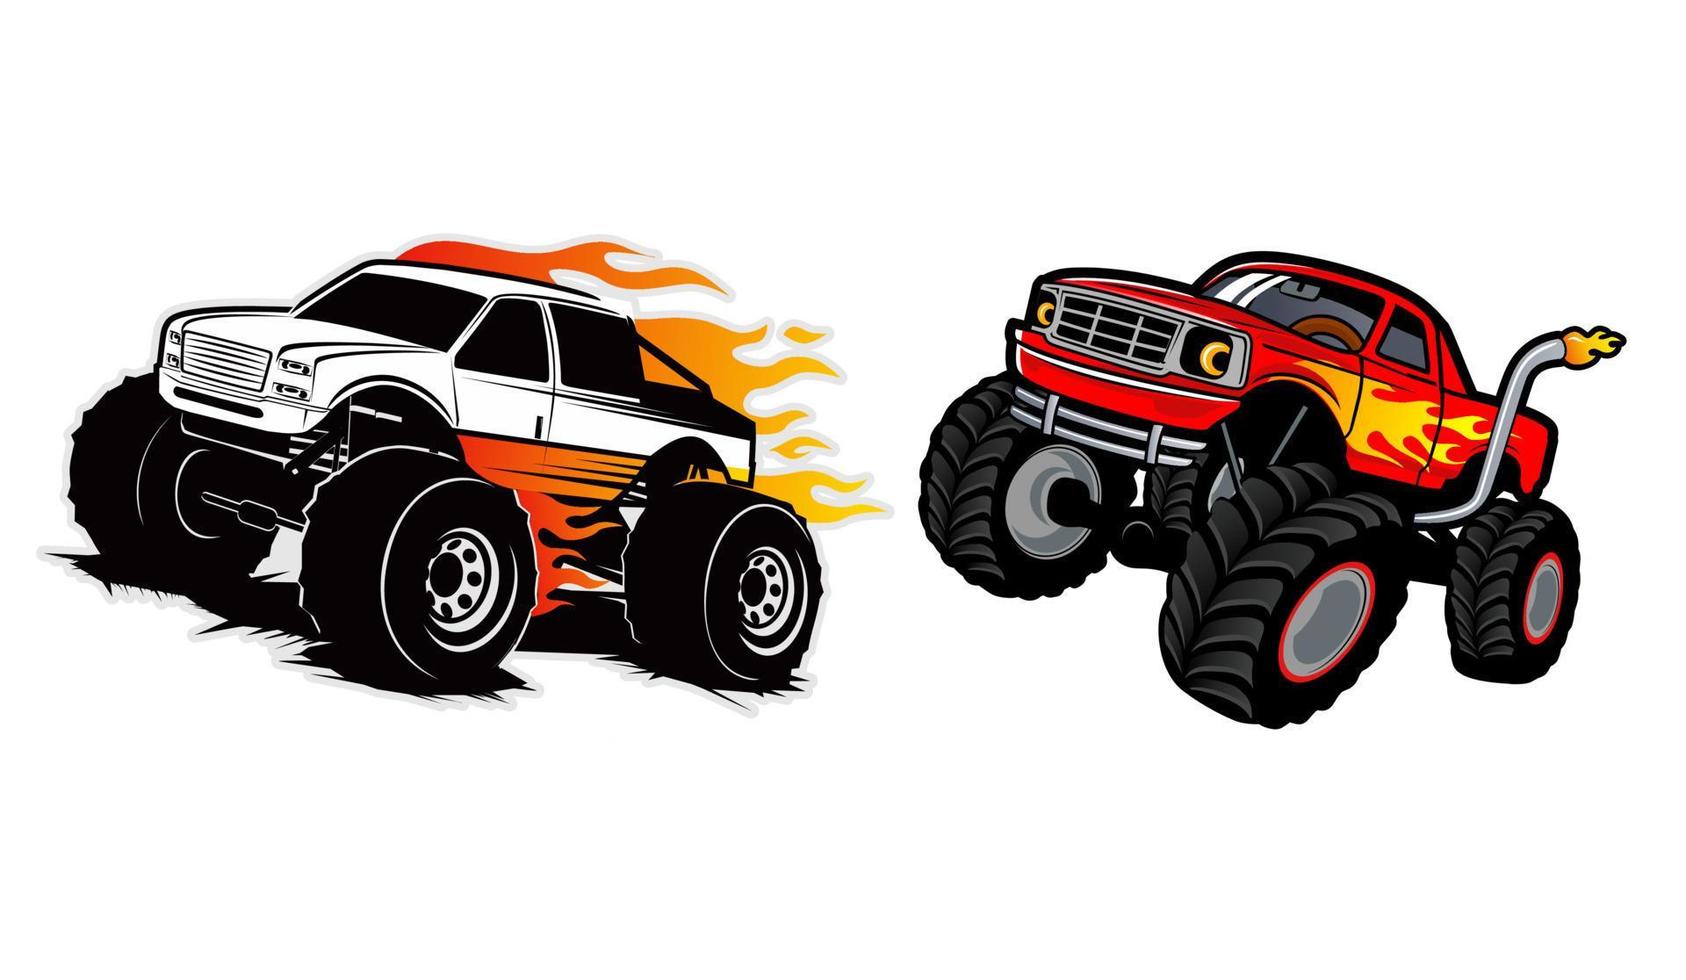 set of monster truck vector logo design inspiration, Design element for logo, poster, card, banner, emblem, t shirt. Vector illustration